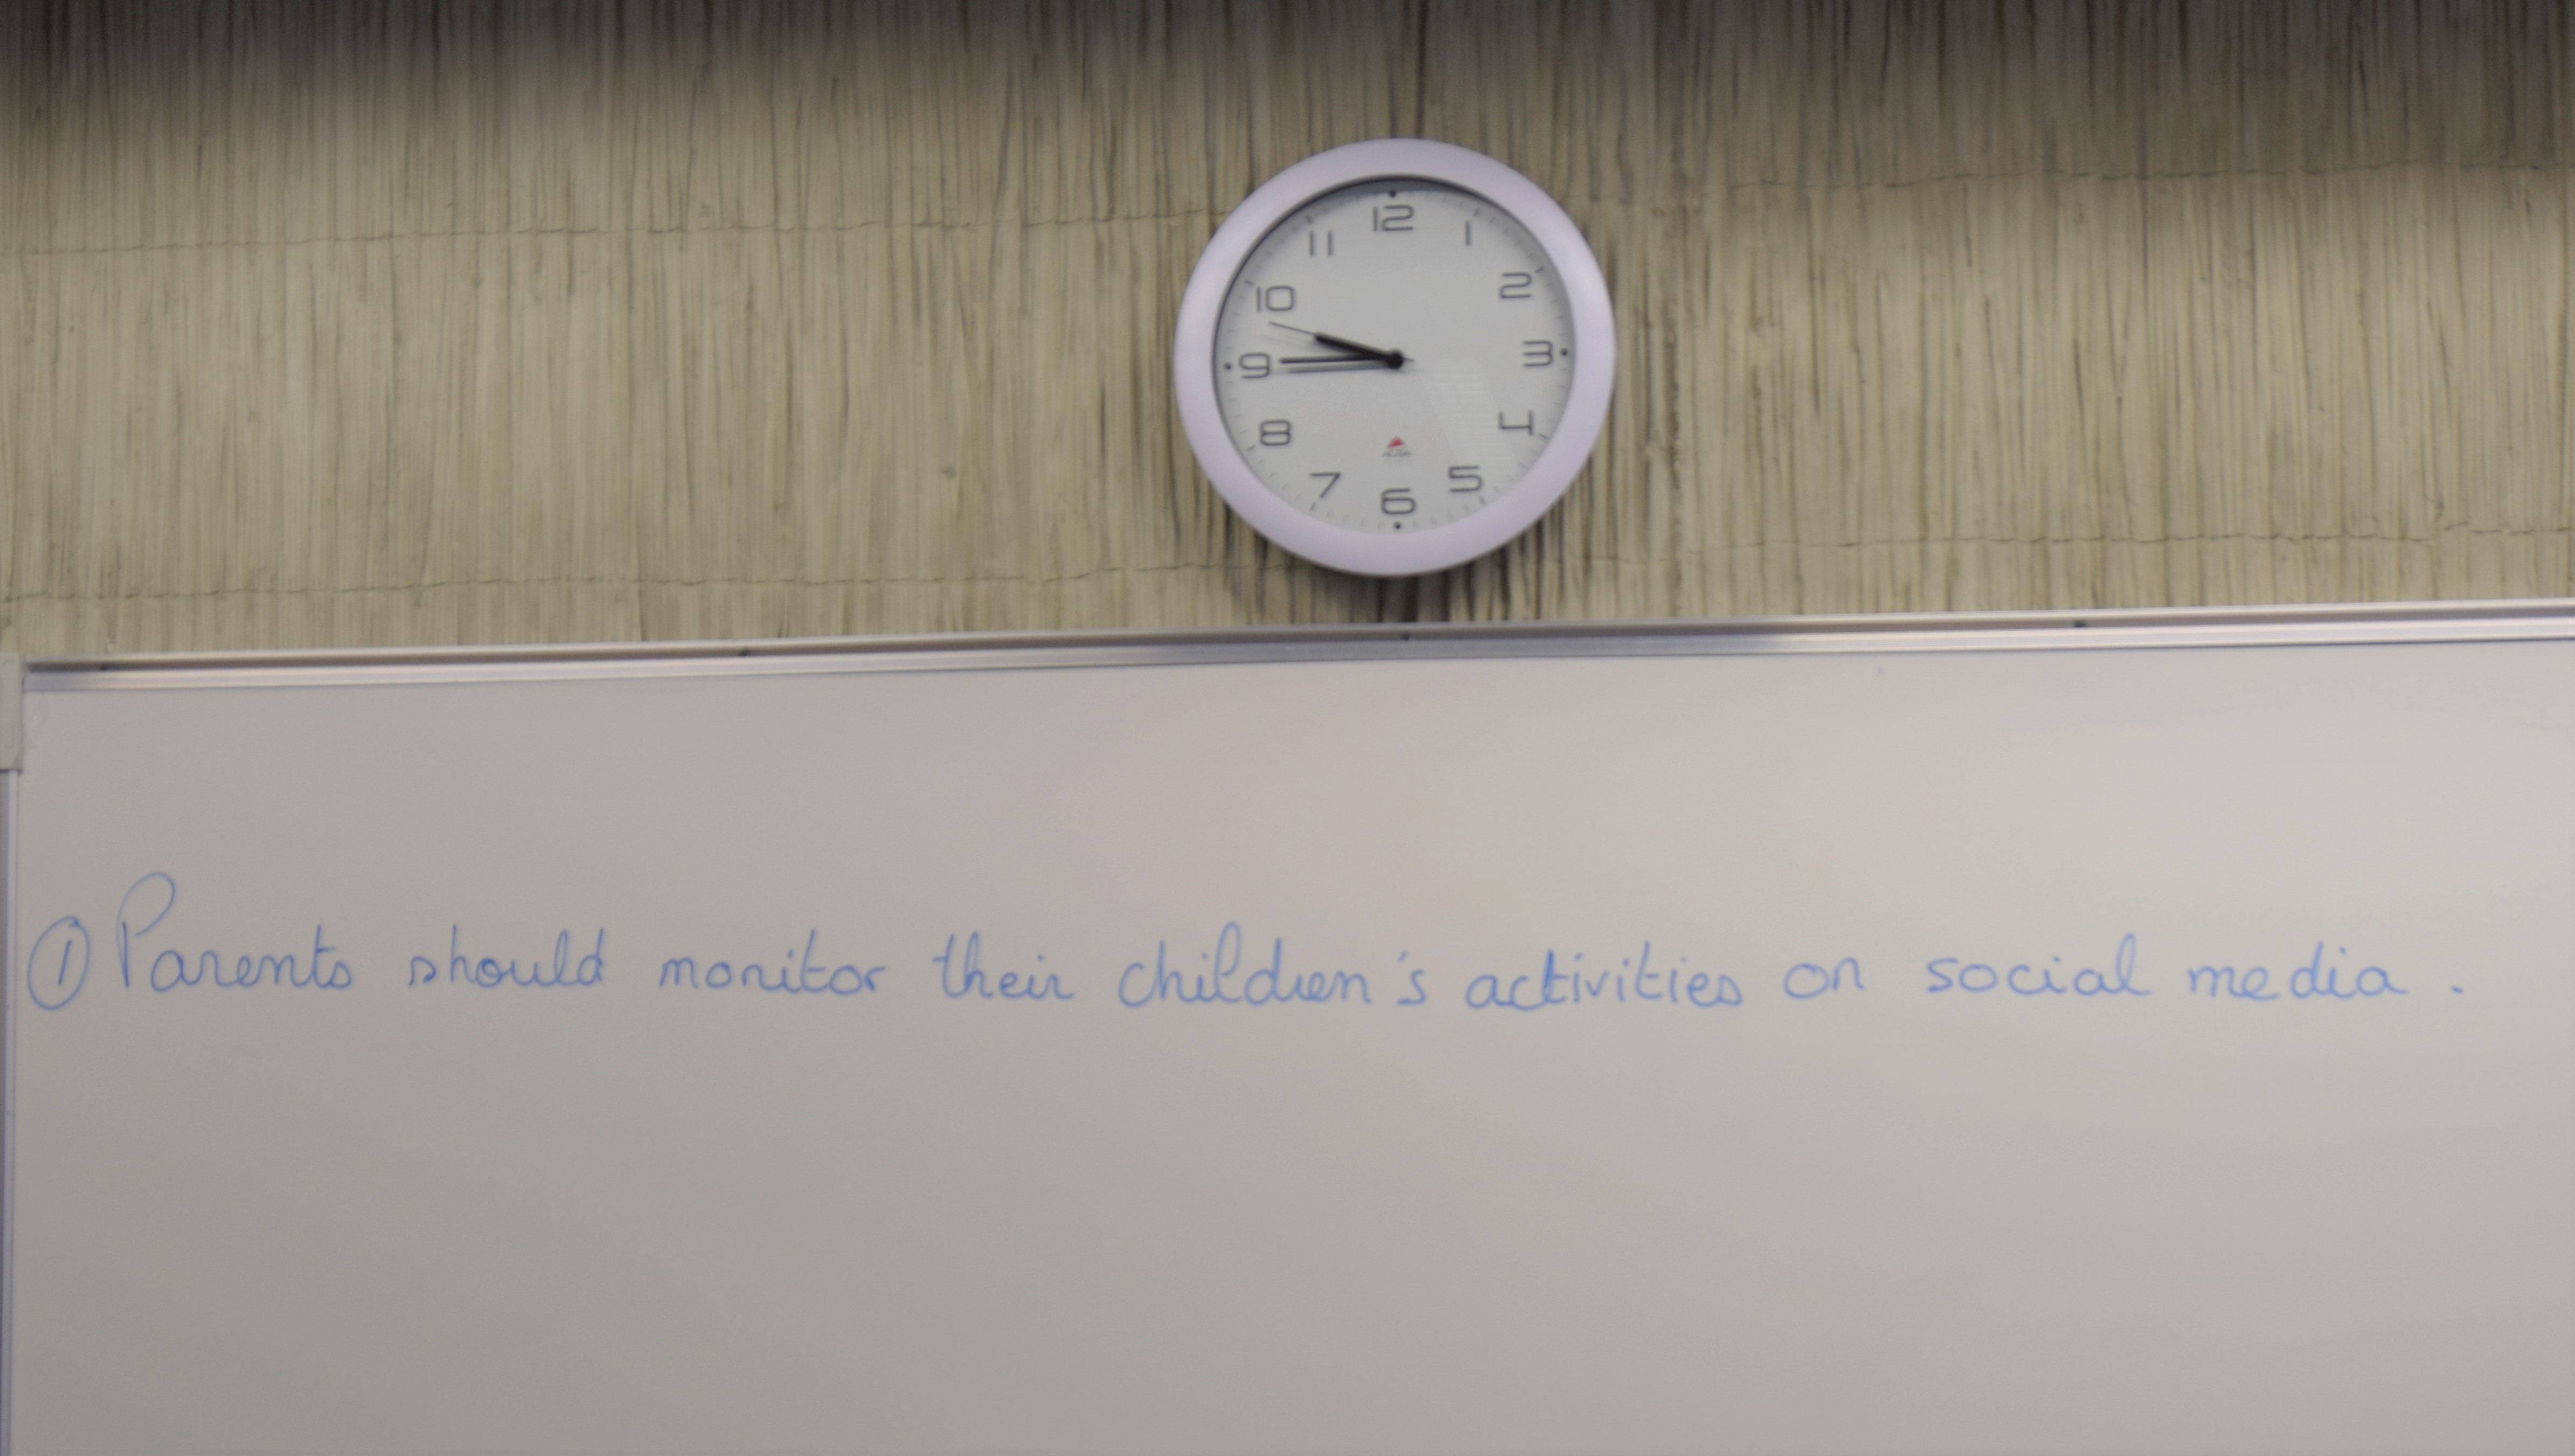 au tableau est inscrit "parents should monitor children's activites on social média